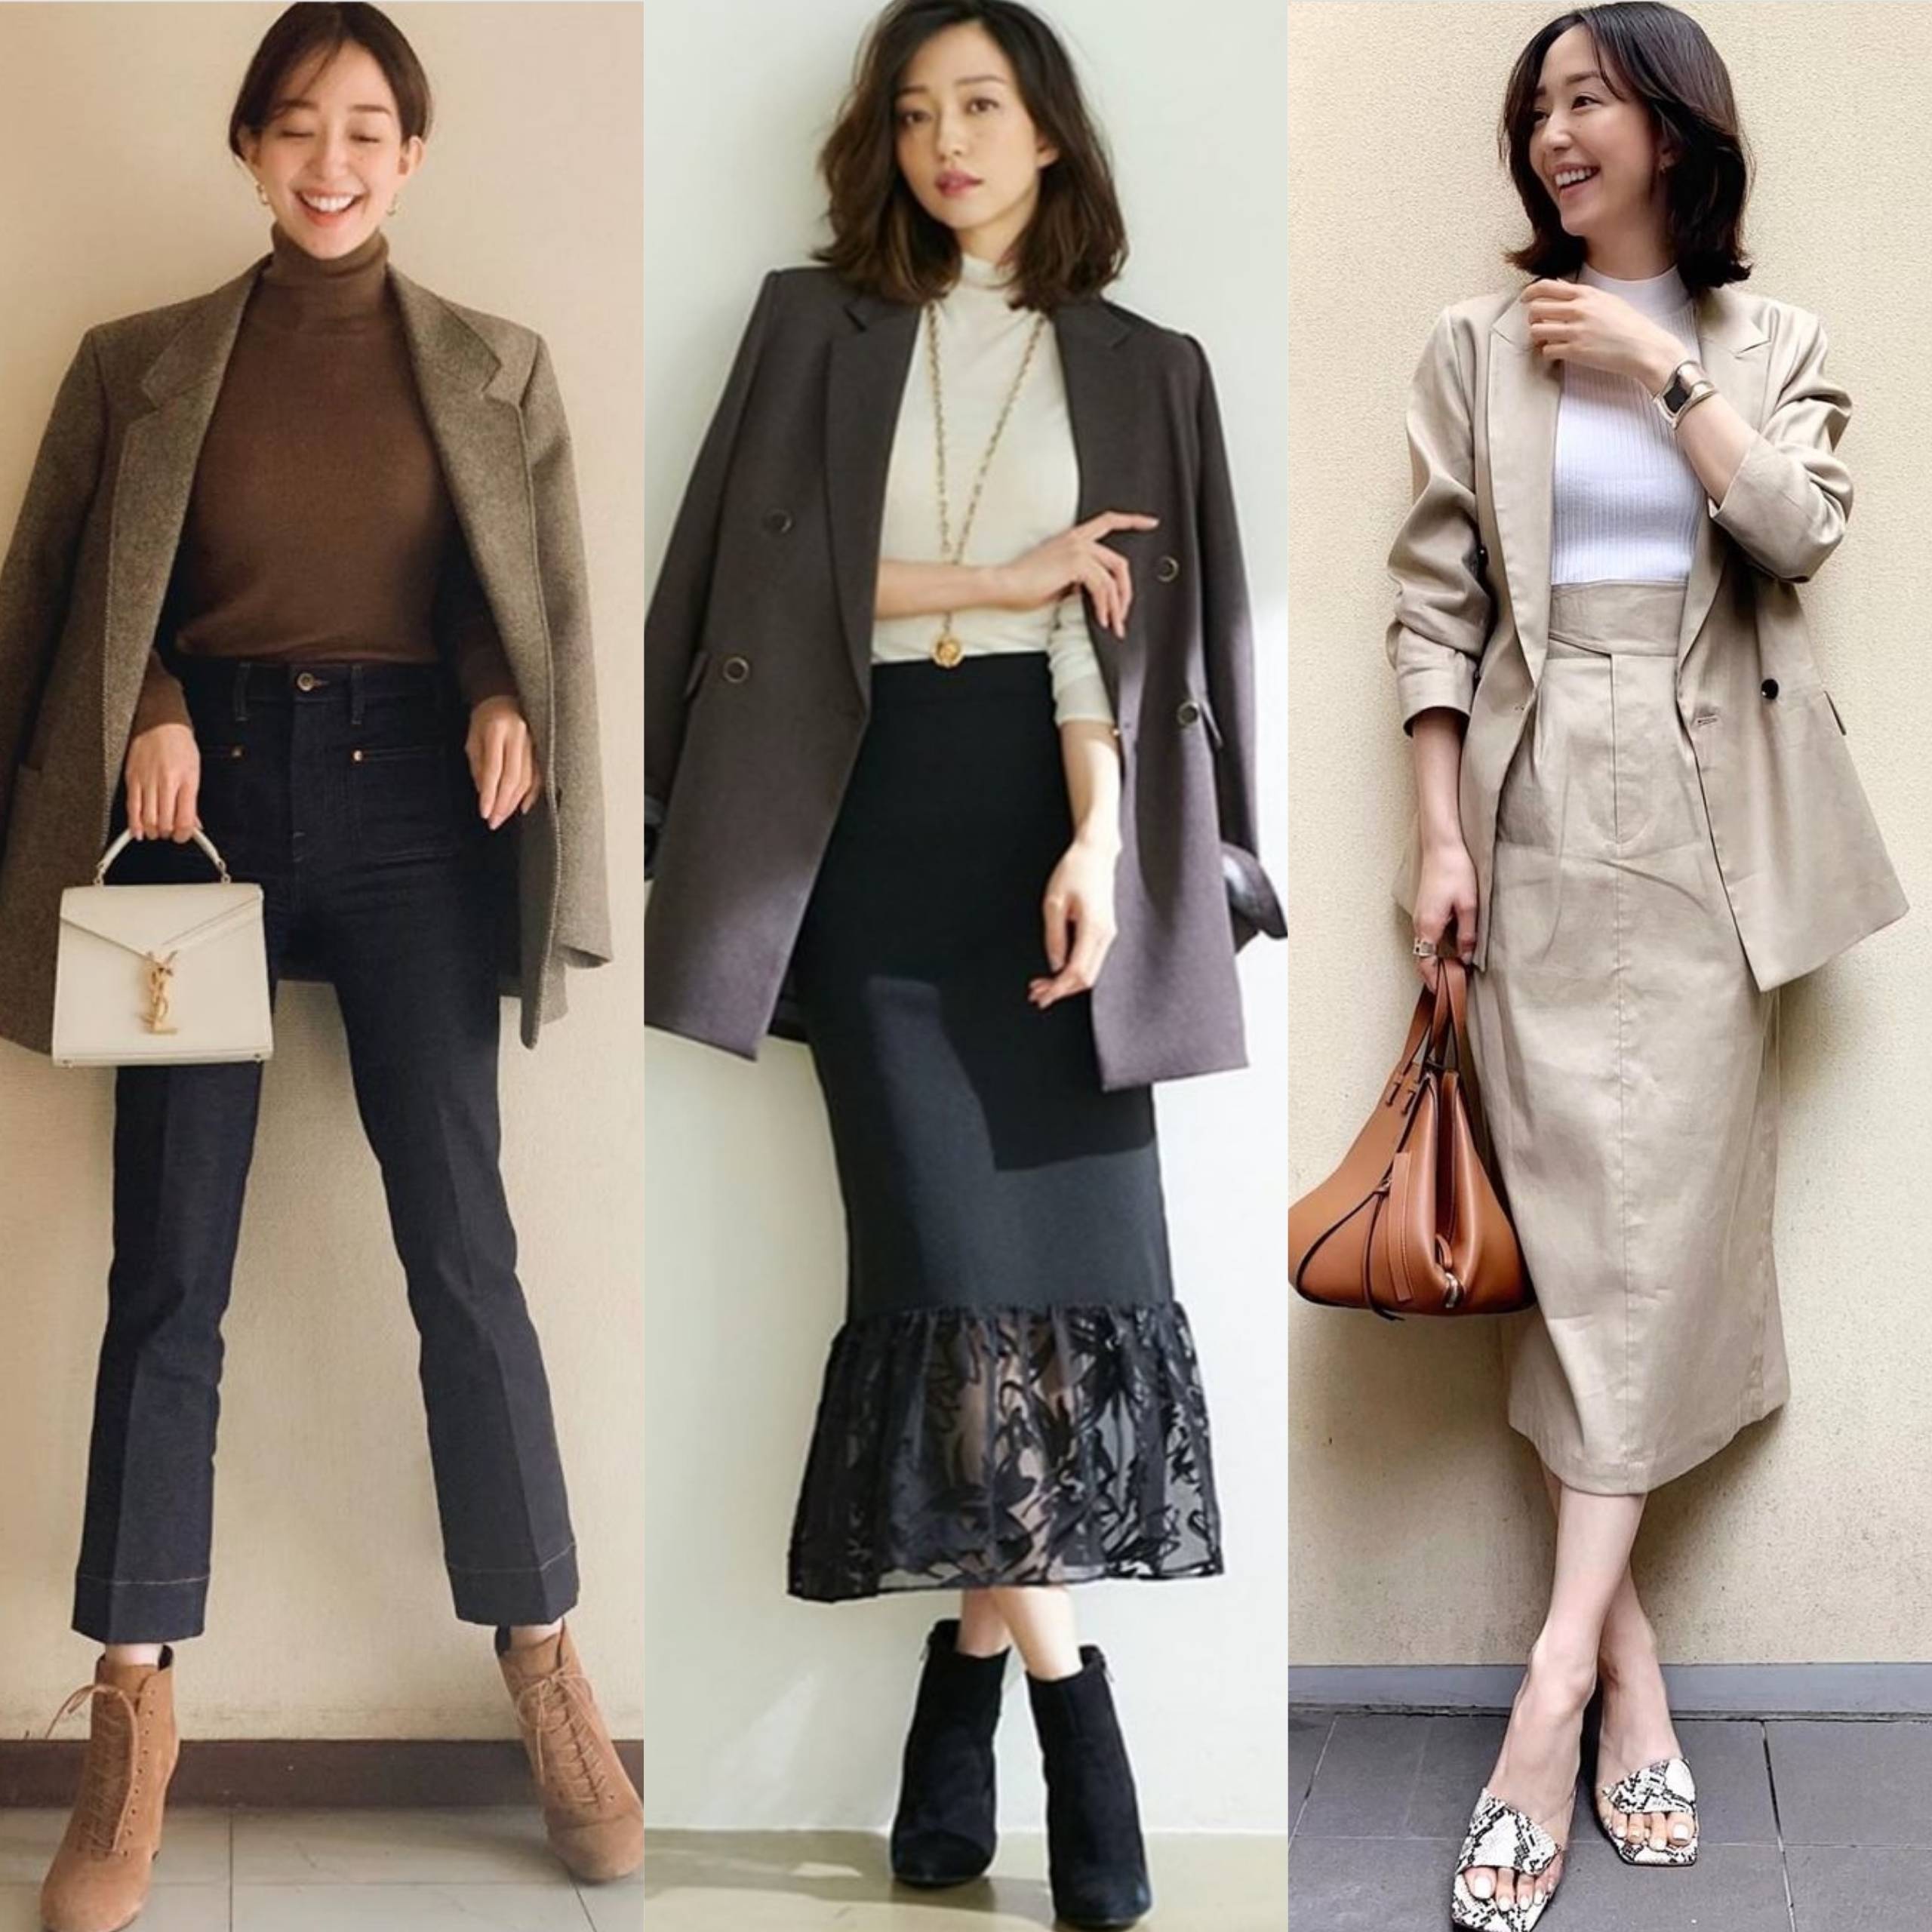 日系成熟女性穿衣风格图片